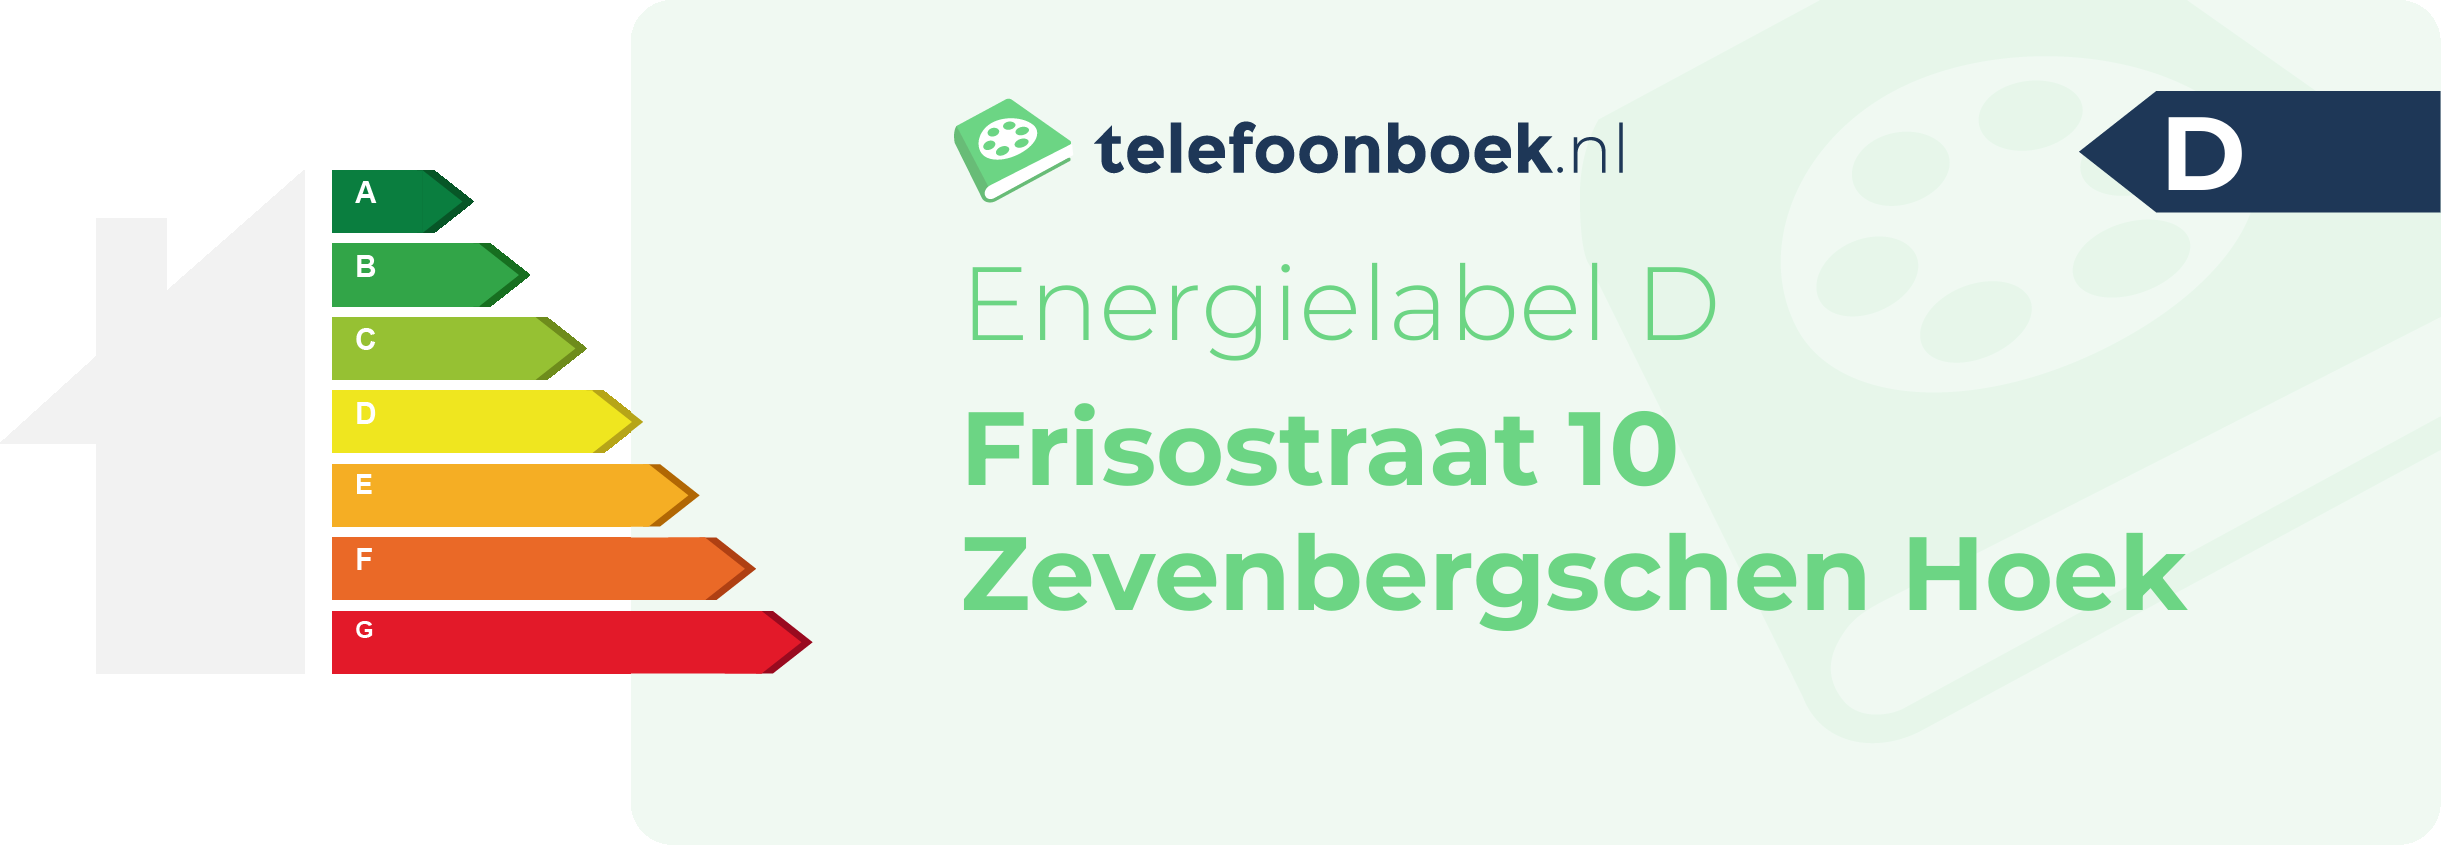 Energielabel Frisostraat 10 Zevenbergschen Hoek